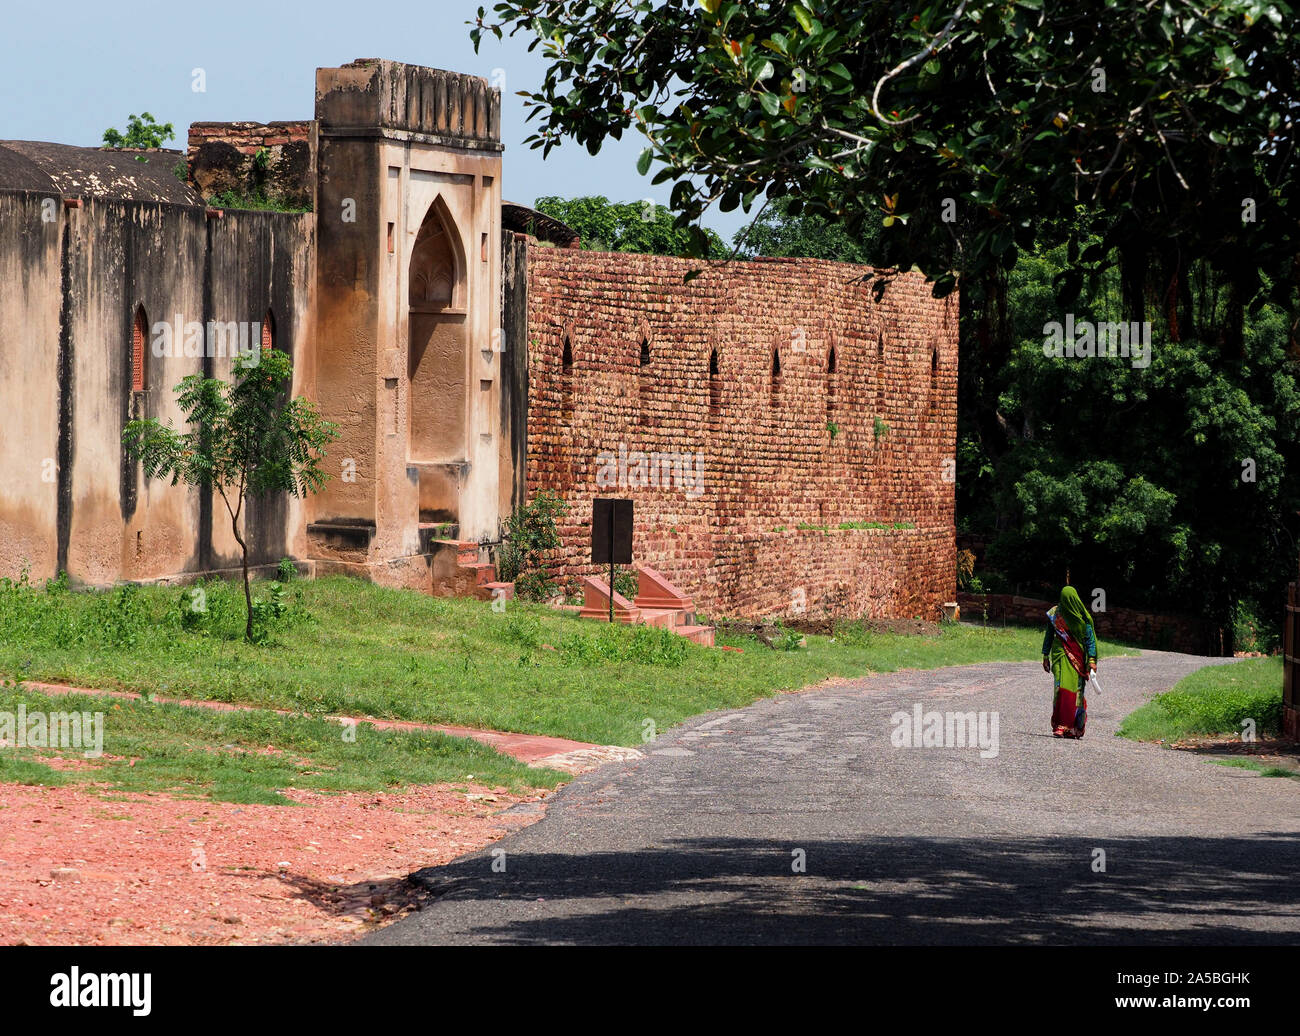 La ville désertée de Fatehpur Sikri, complexes de l'Inde, autrefois la capitale du pays. Fatehpur Sikri ville dans la région d'Agra d'Uttar Pradesh, Inde Banque D'Images